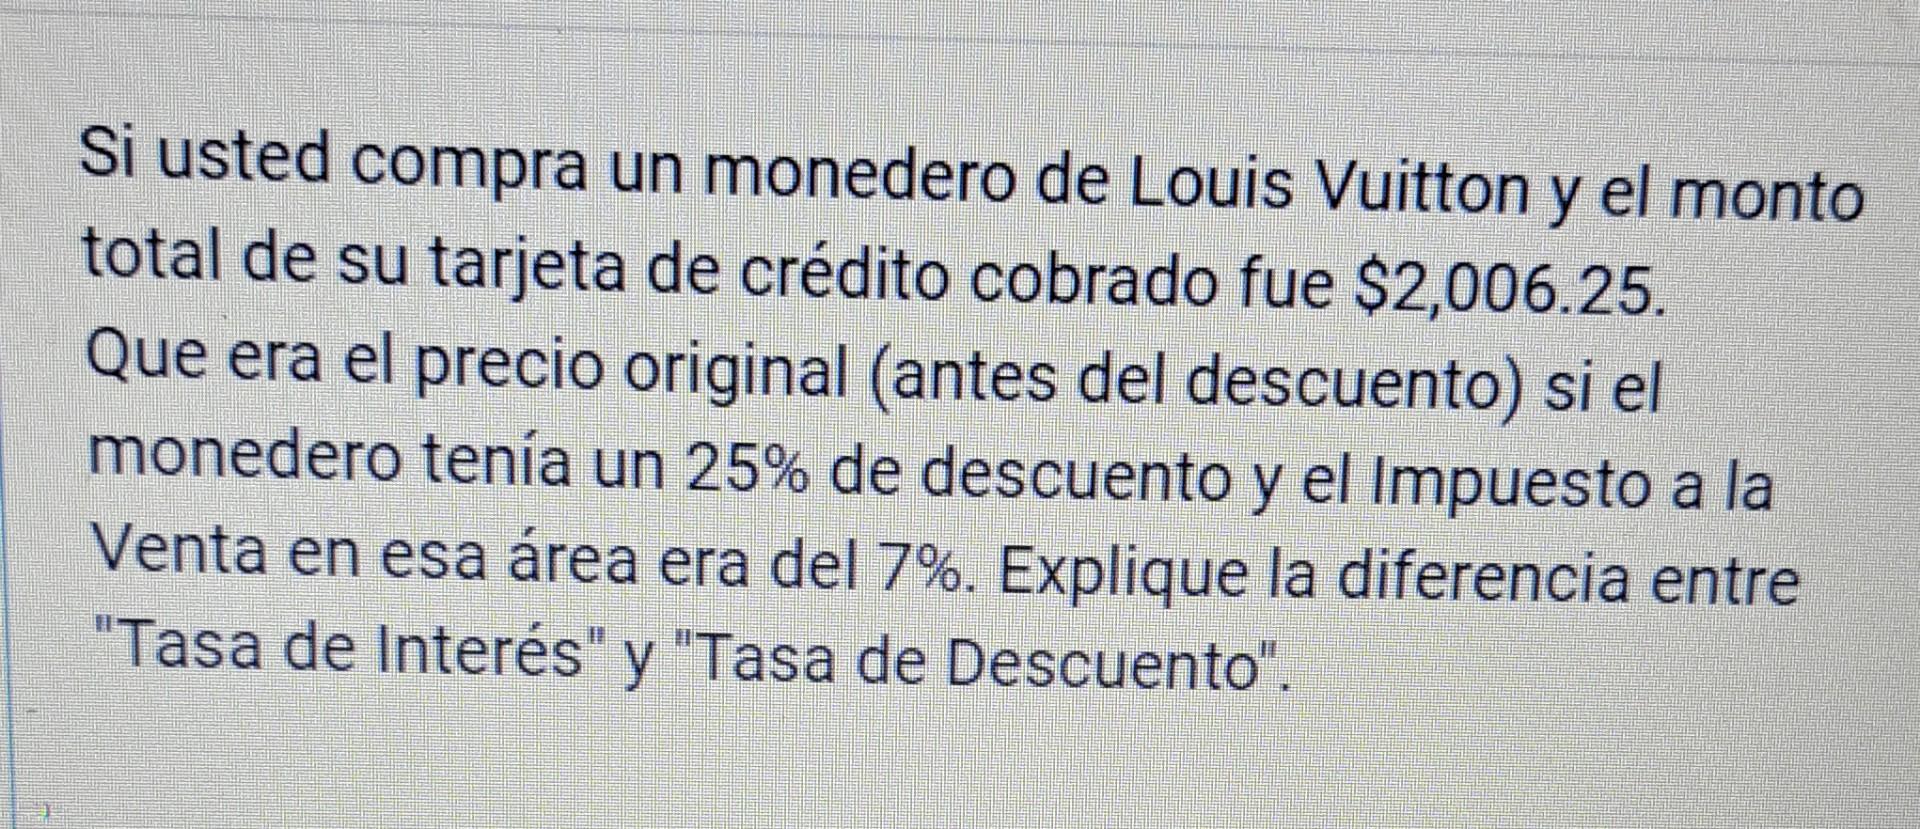 Solved Si usted compra un monedero de Louis Vuitton y el